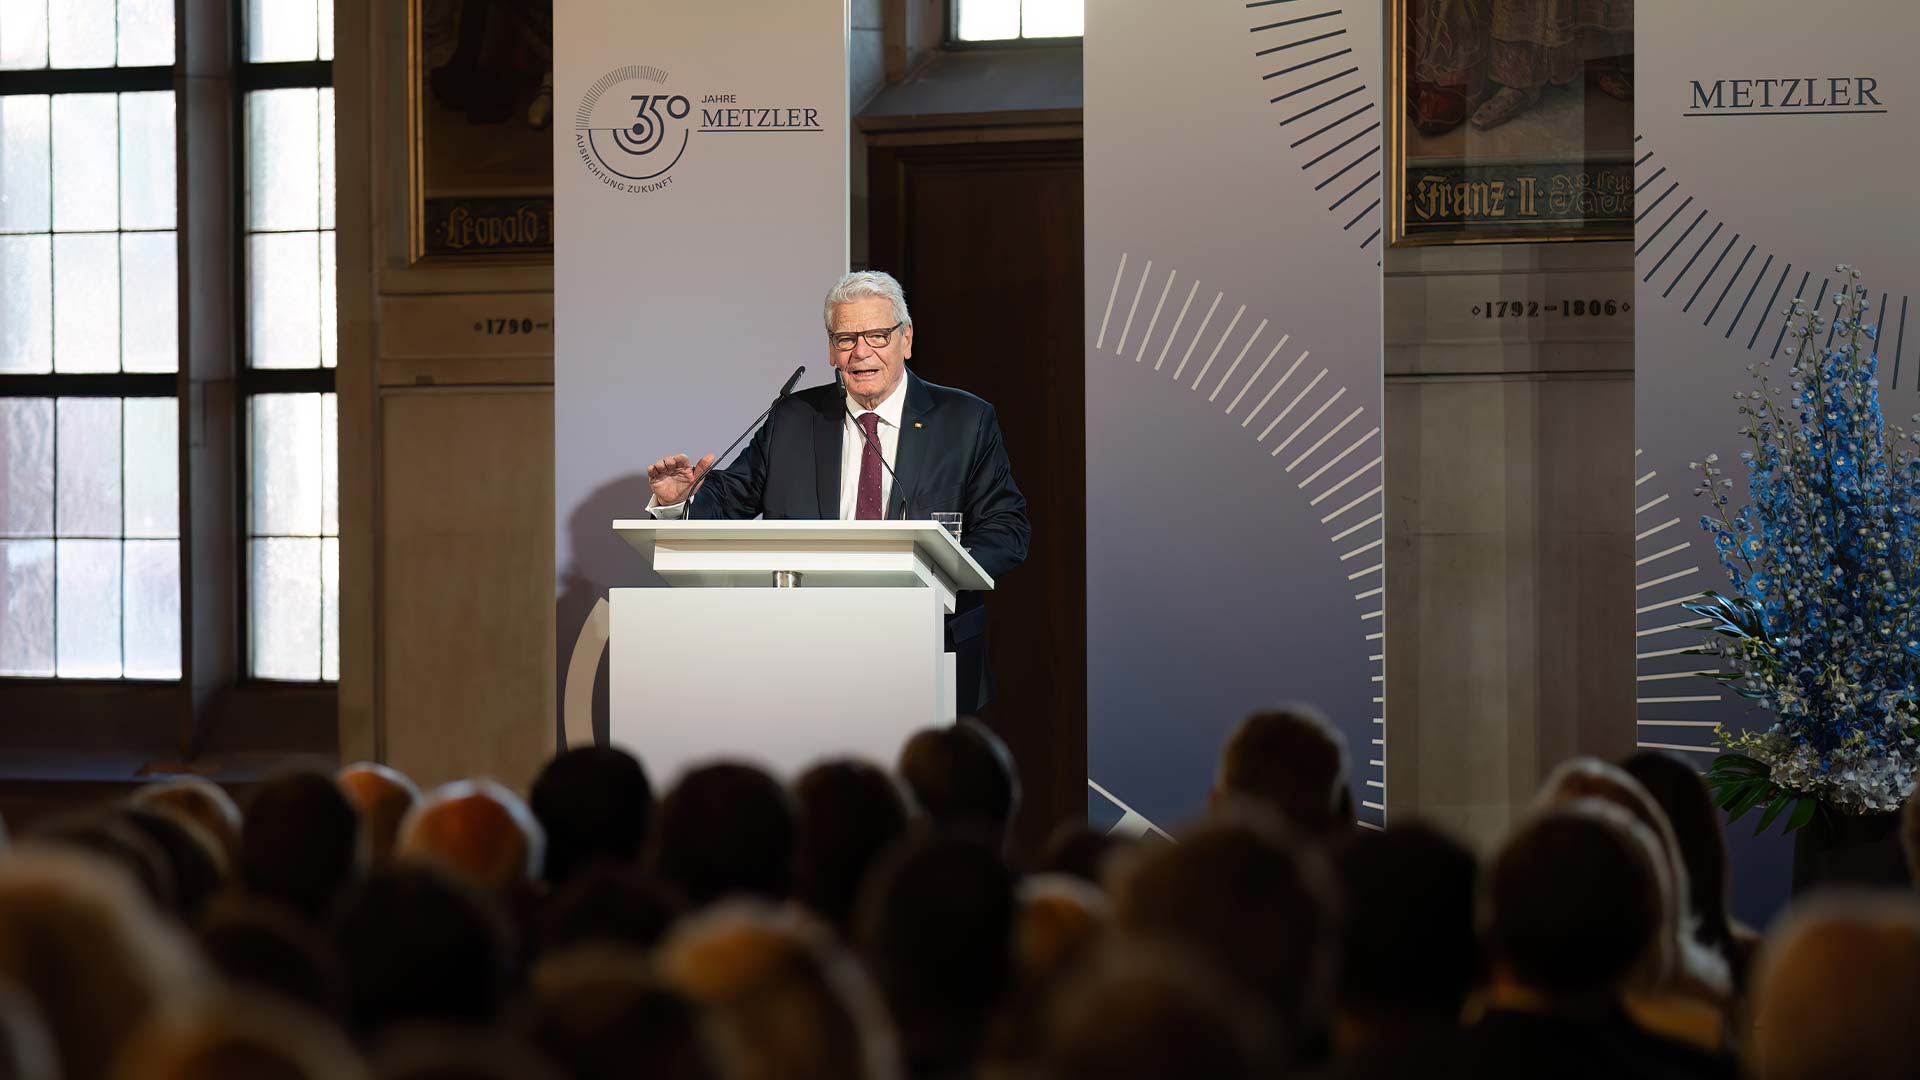 Festakt - Ansprache von Bundespräsident a. D. Dr. h. c. Joachim Gauck